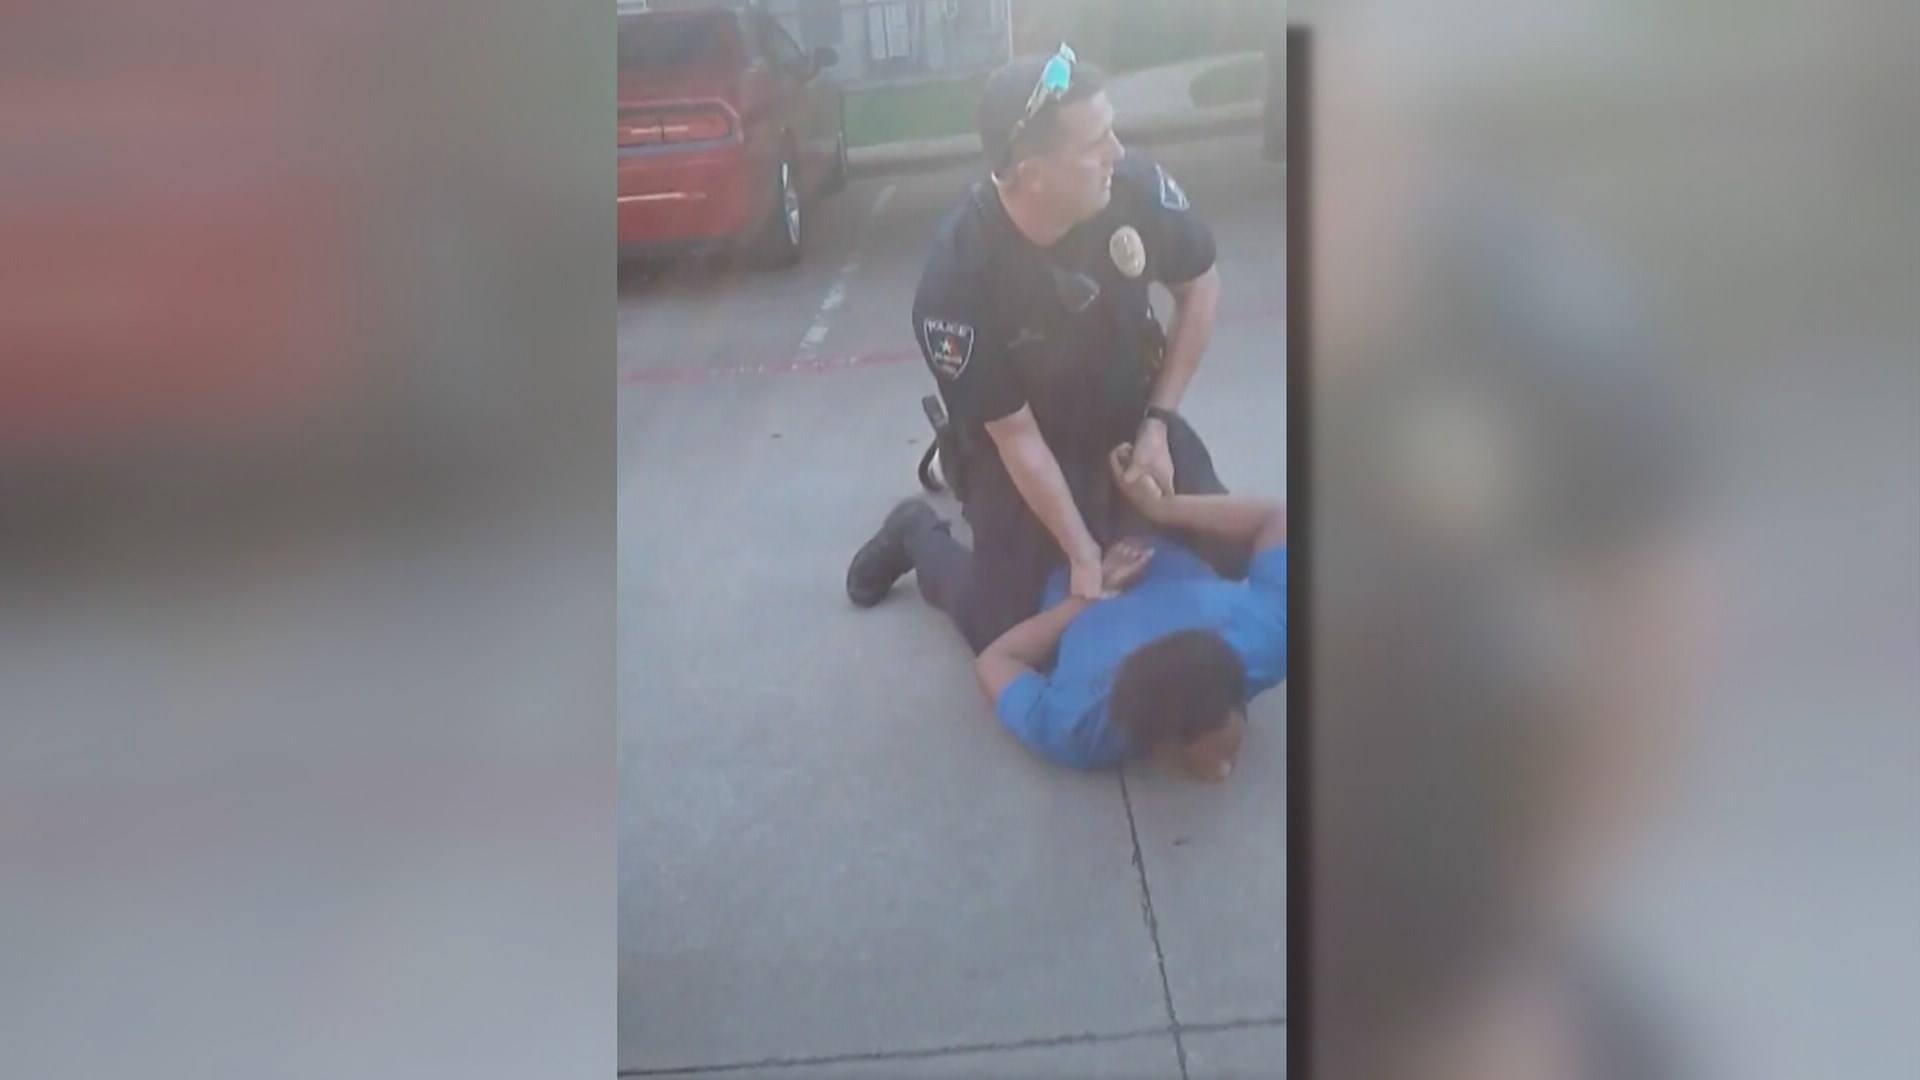 Video of Arlington teen arrest sparks